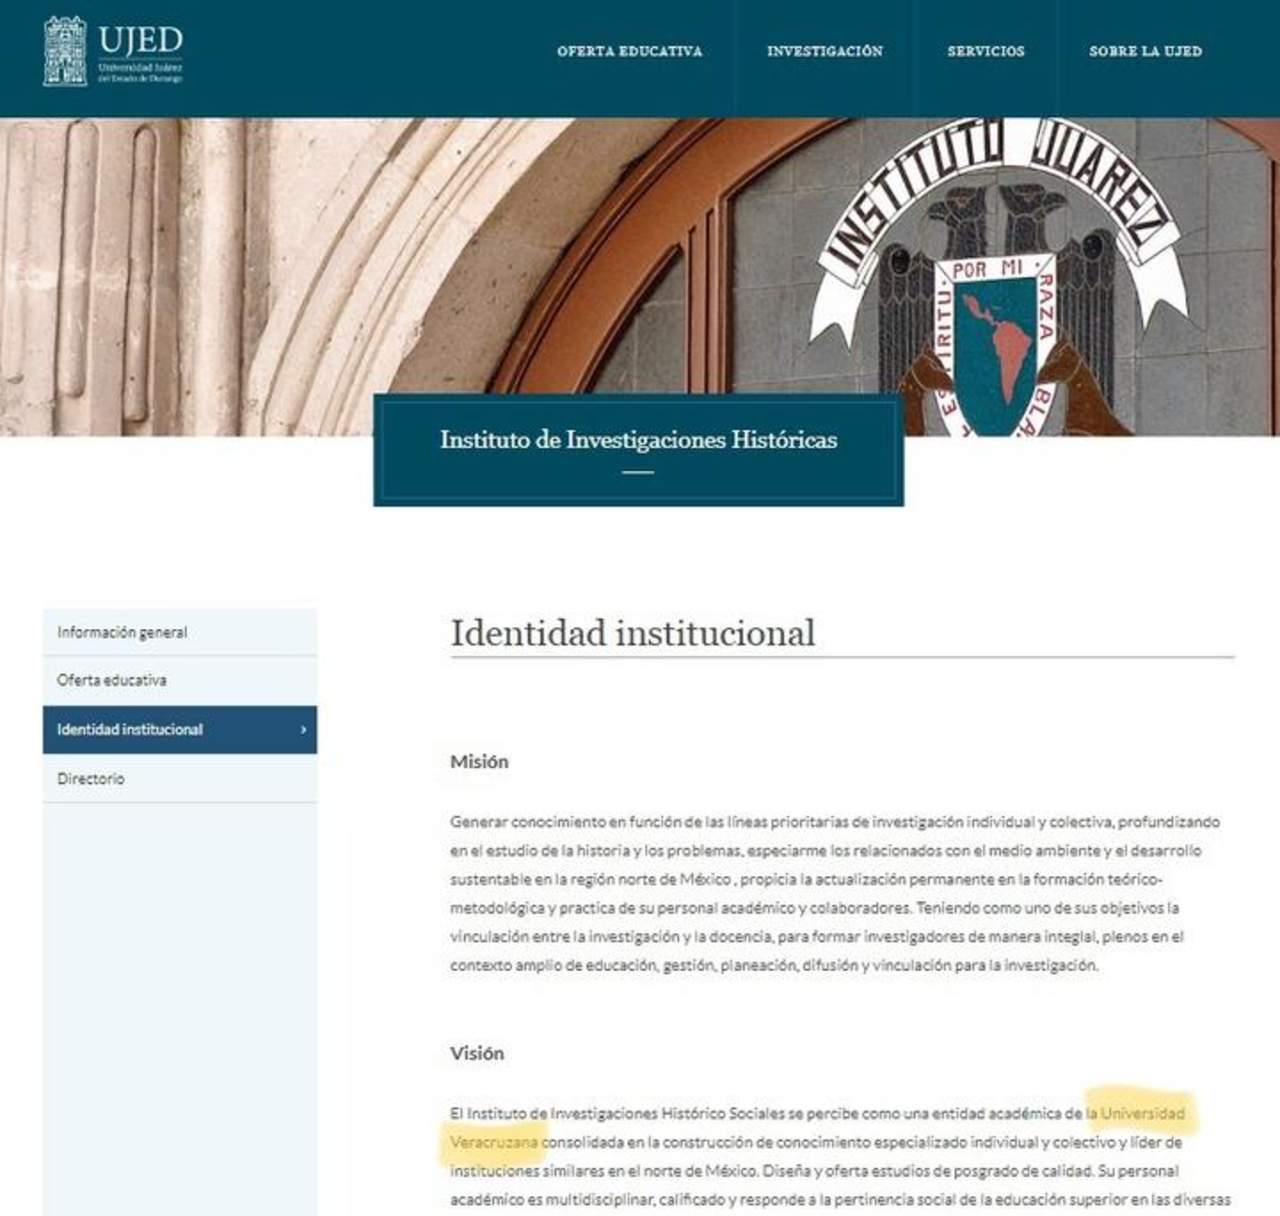 La UJED cuenta con un Instituto de Investigaciones Históricas, no con un Instituto de Investigaciones Histórico Sociales. (INTERNET)